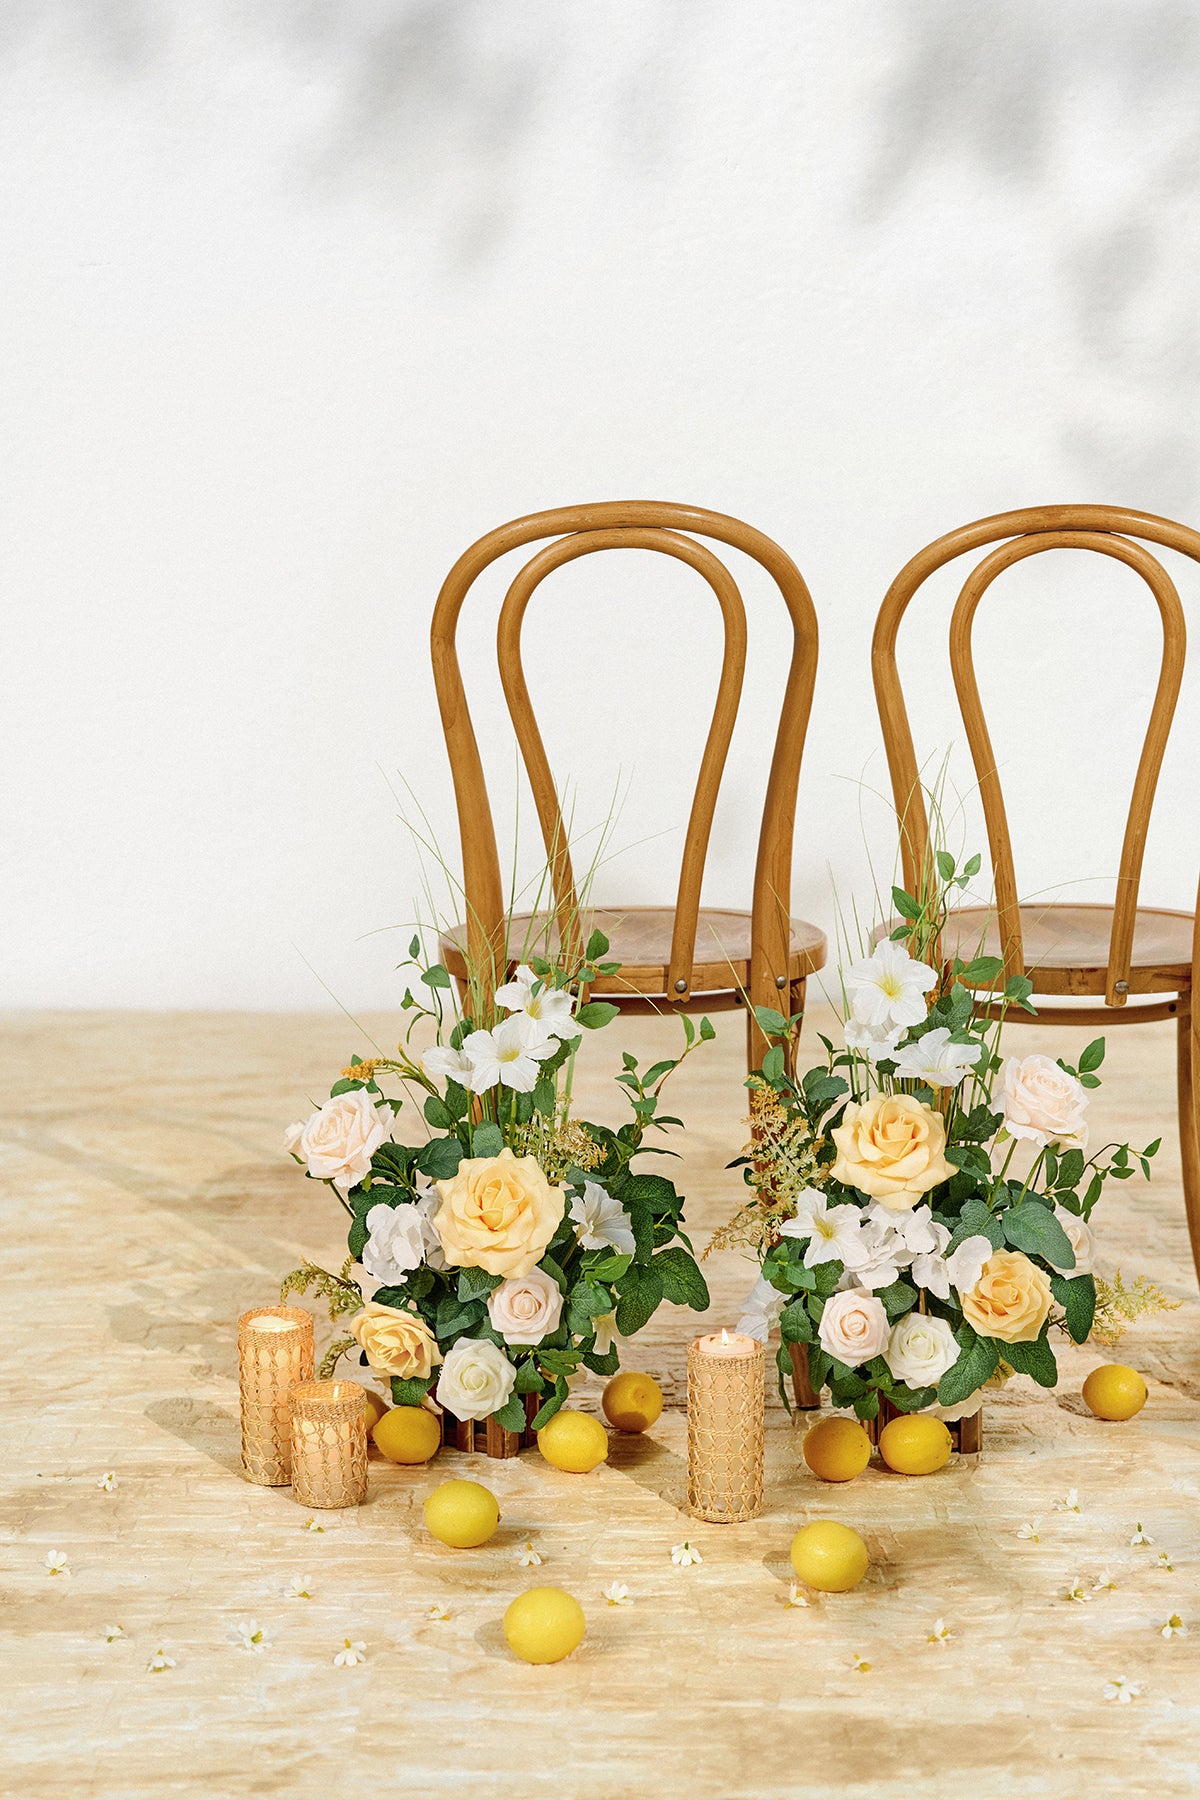 Wedding Aisle Runner Flower Arrangement in Lemonade Yellow